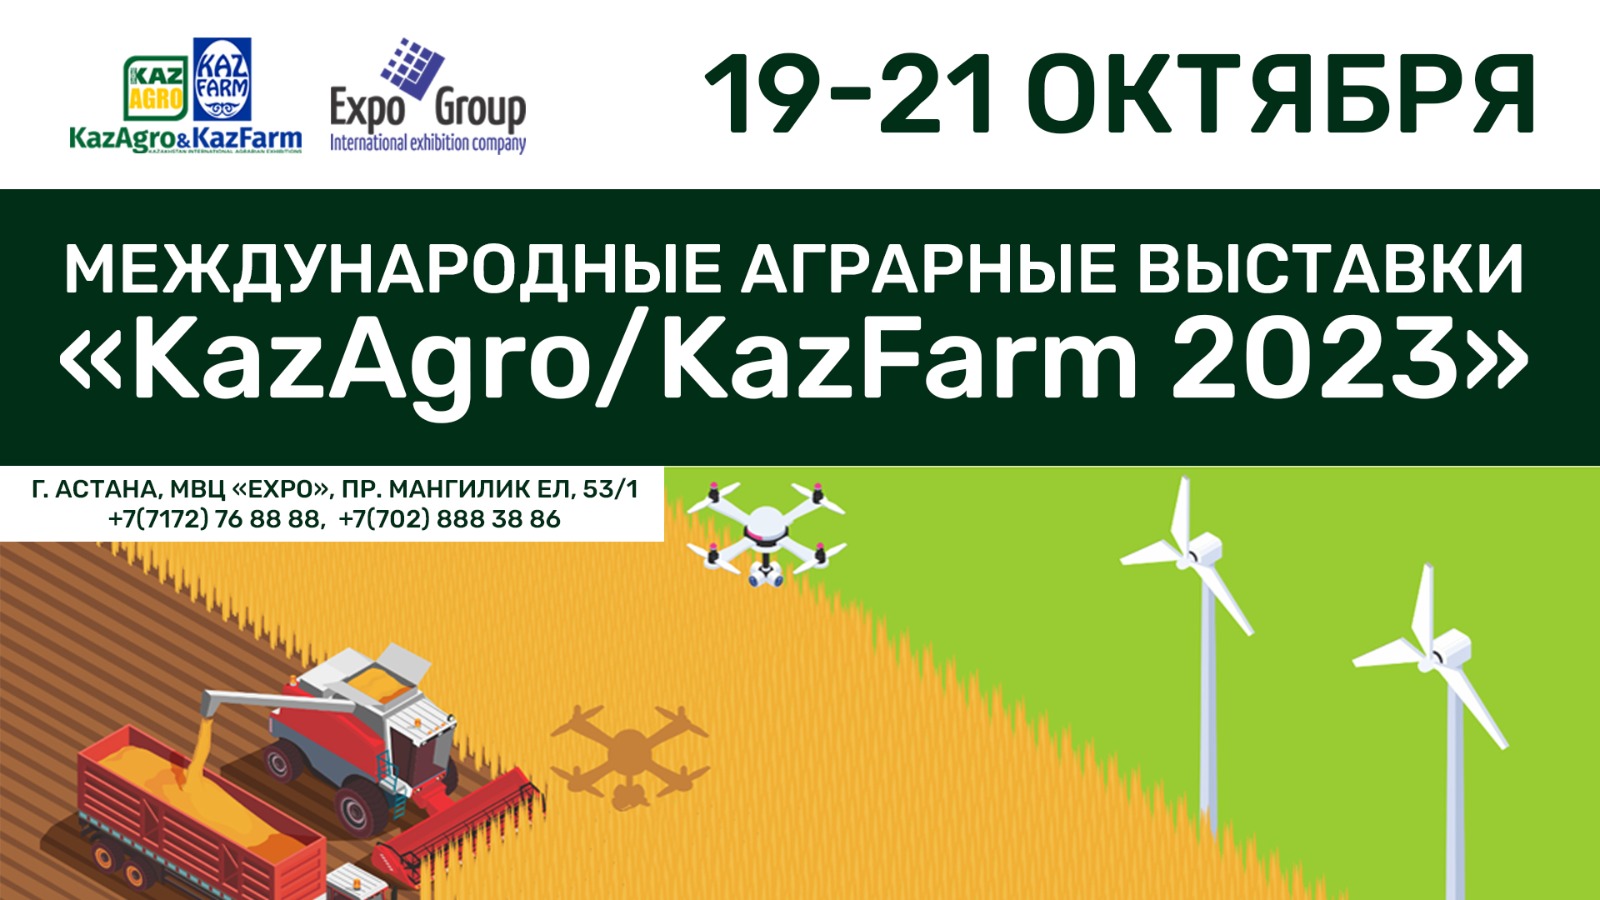 В МВЦ EXPO пройдут международные аграрные выставки KazAgro/KazFarm 2023